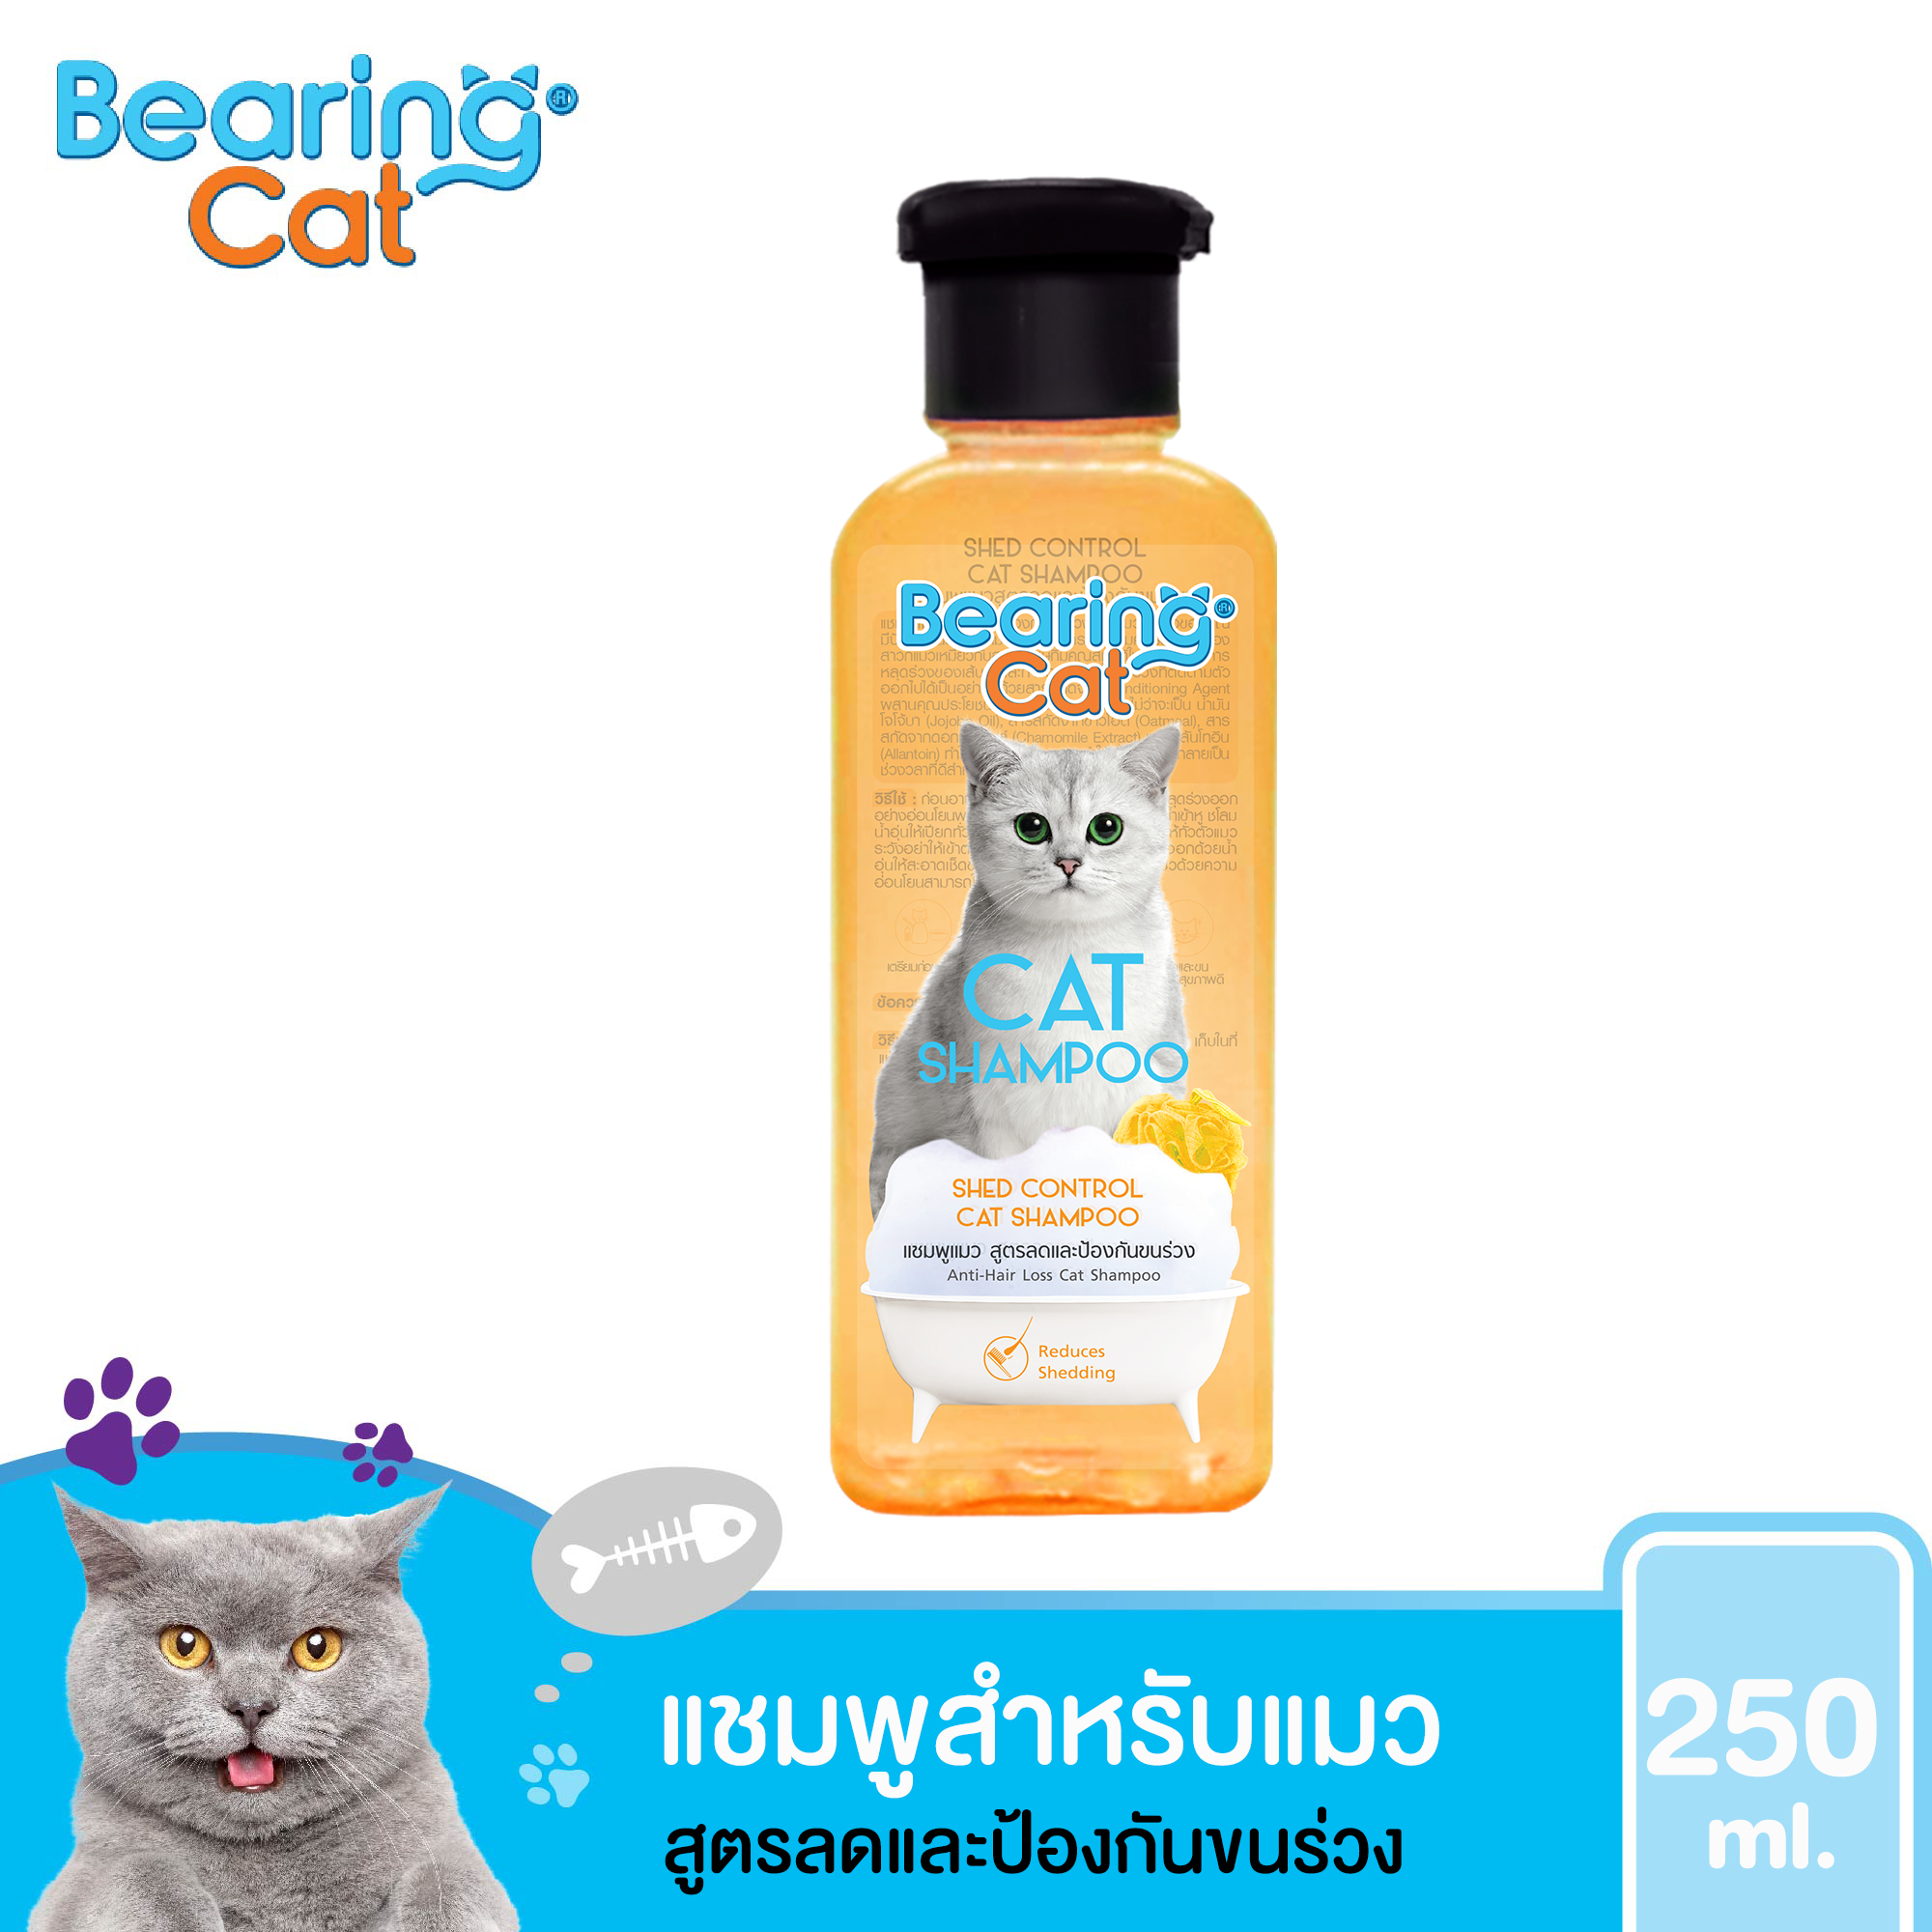 แชมพูแมว แชมพูอาบน้ำแมว แมว สำหรับแมว สูตรอ่อนโยน สำหรับแมวทุกสายพันธุ์ BEARING Cat Cat Shampoo สูตรลดและป้องกันการหลุดร่วงของขน 250 ml. (สีส้ม)